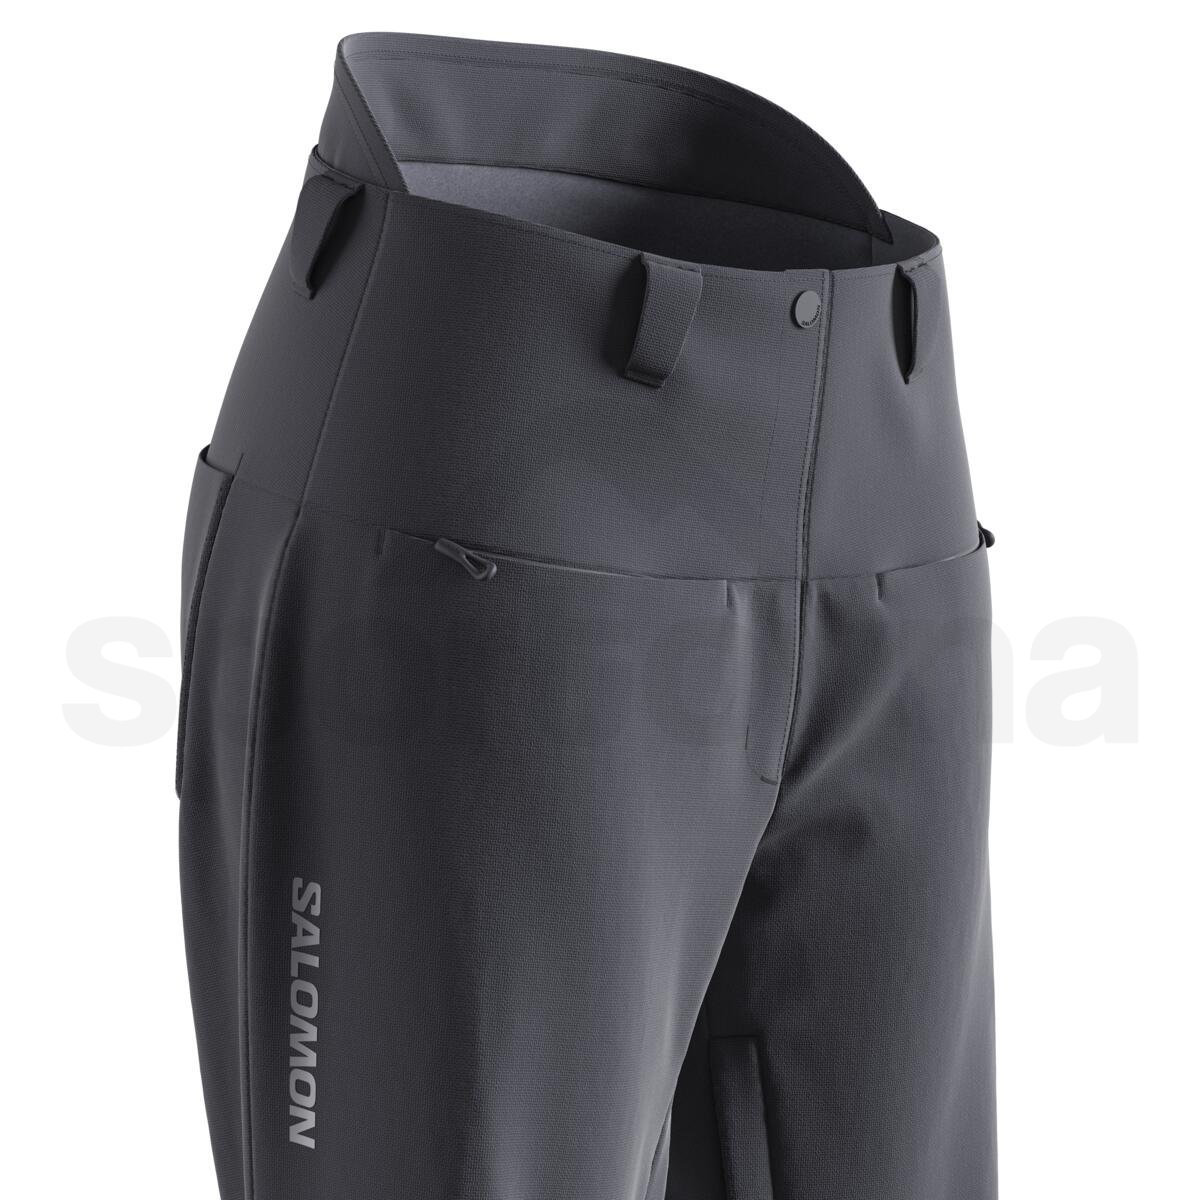 Kalhoty Salomon Brilliant Pants (standardní délka) W - černá